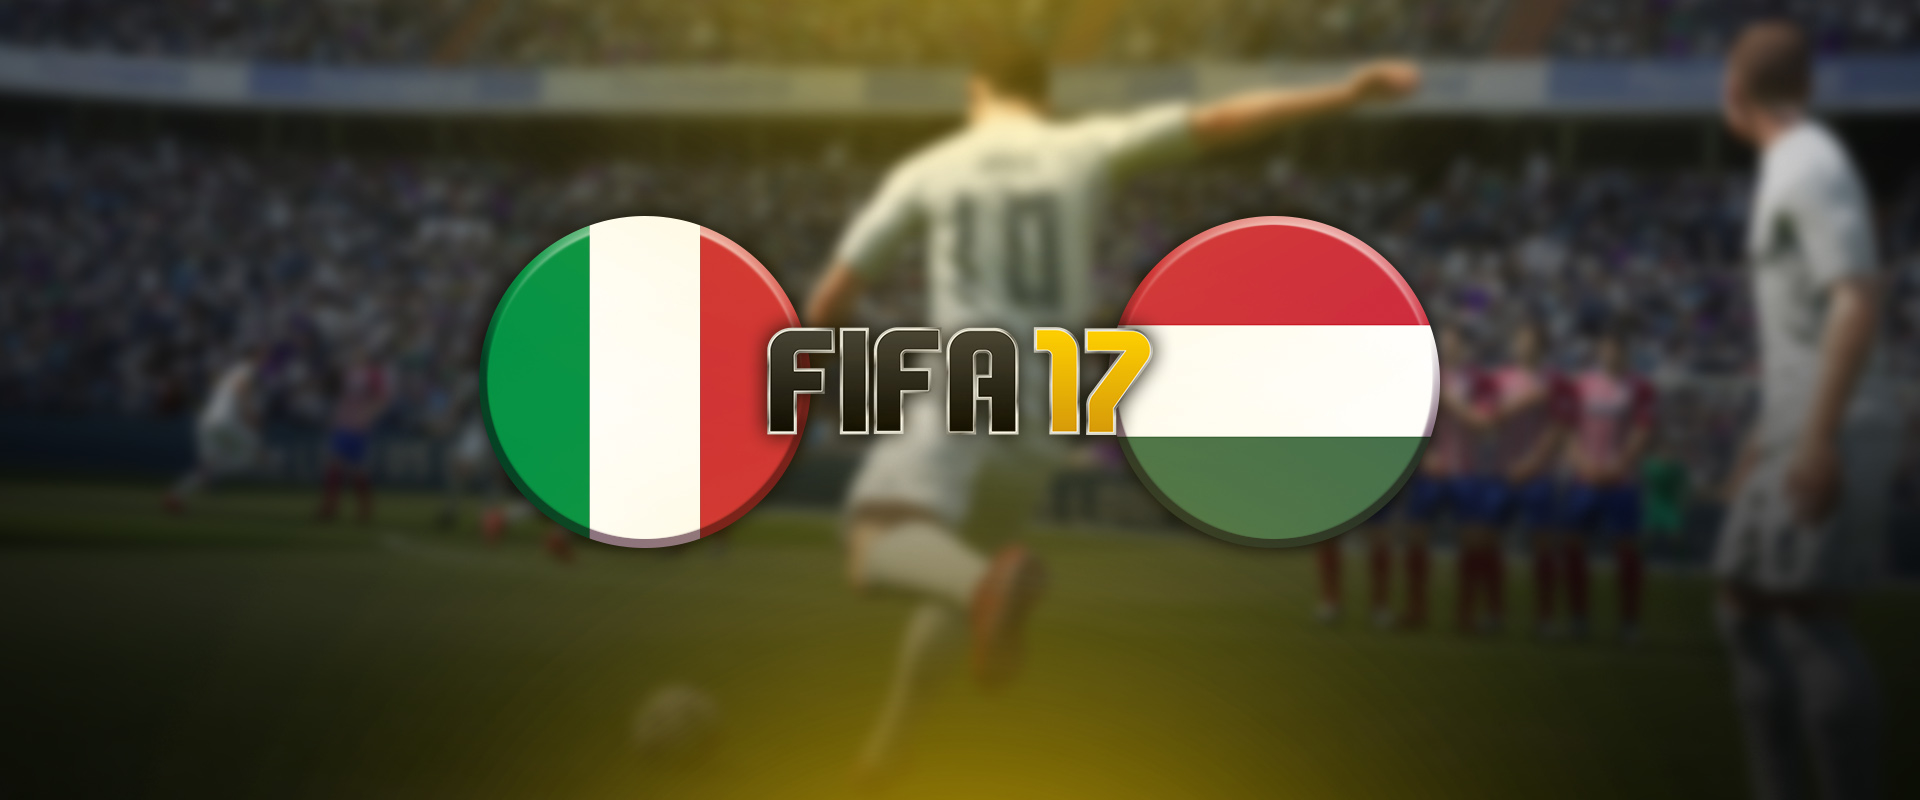 Az utolsó percben mentettünk pontot Olaszország ellen az U21-es világbajnokságon!